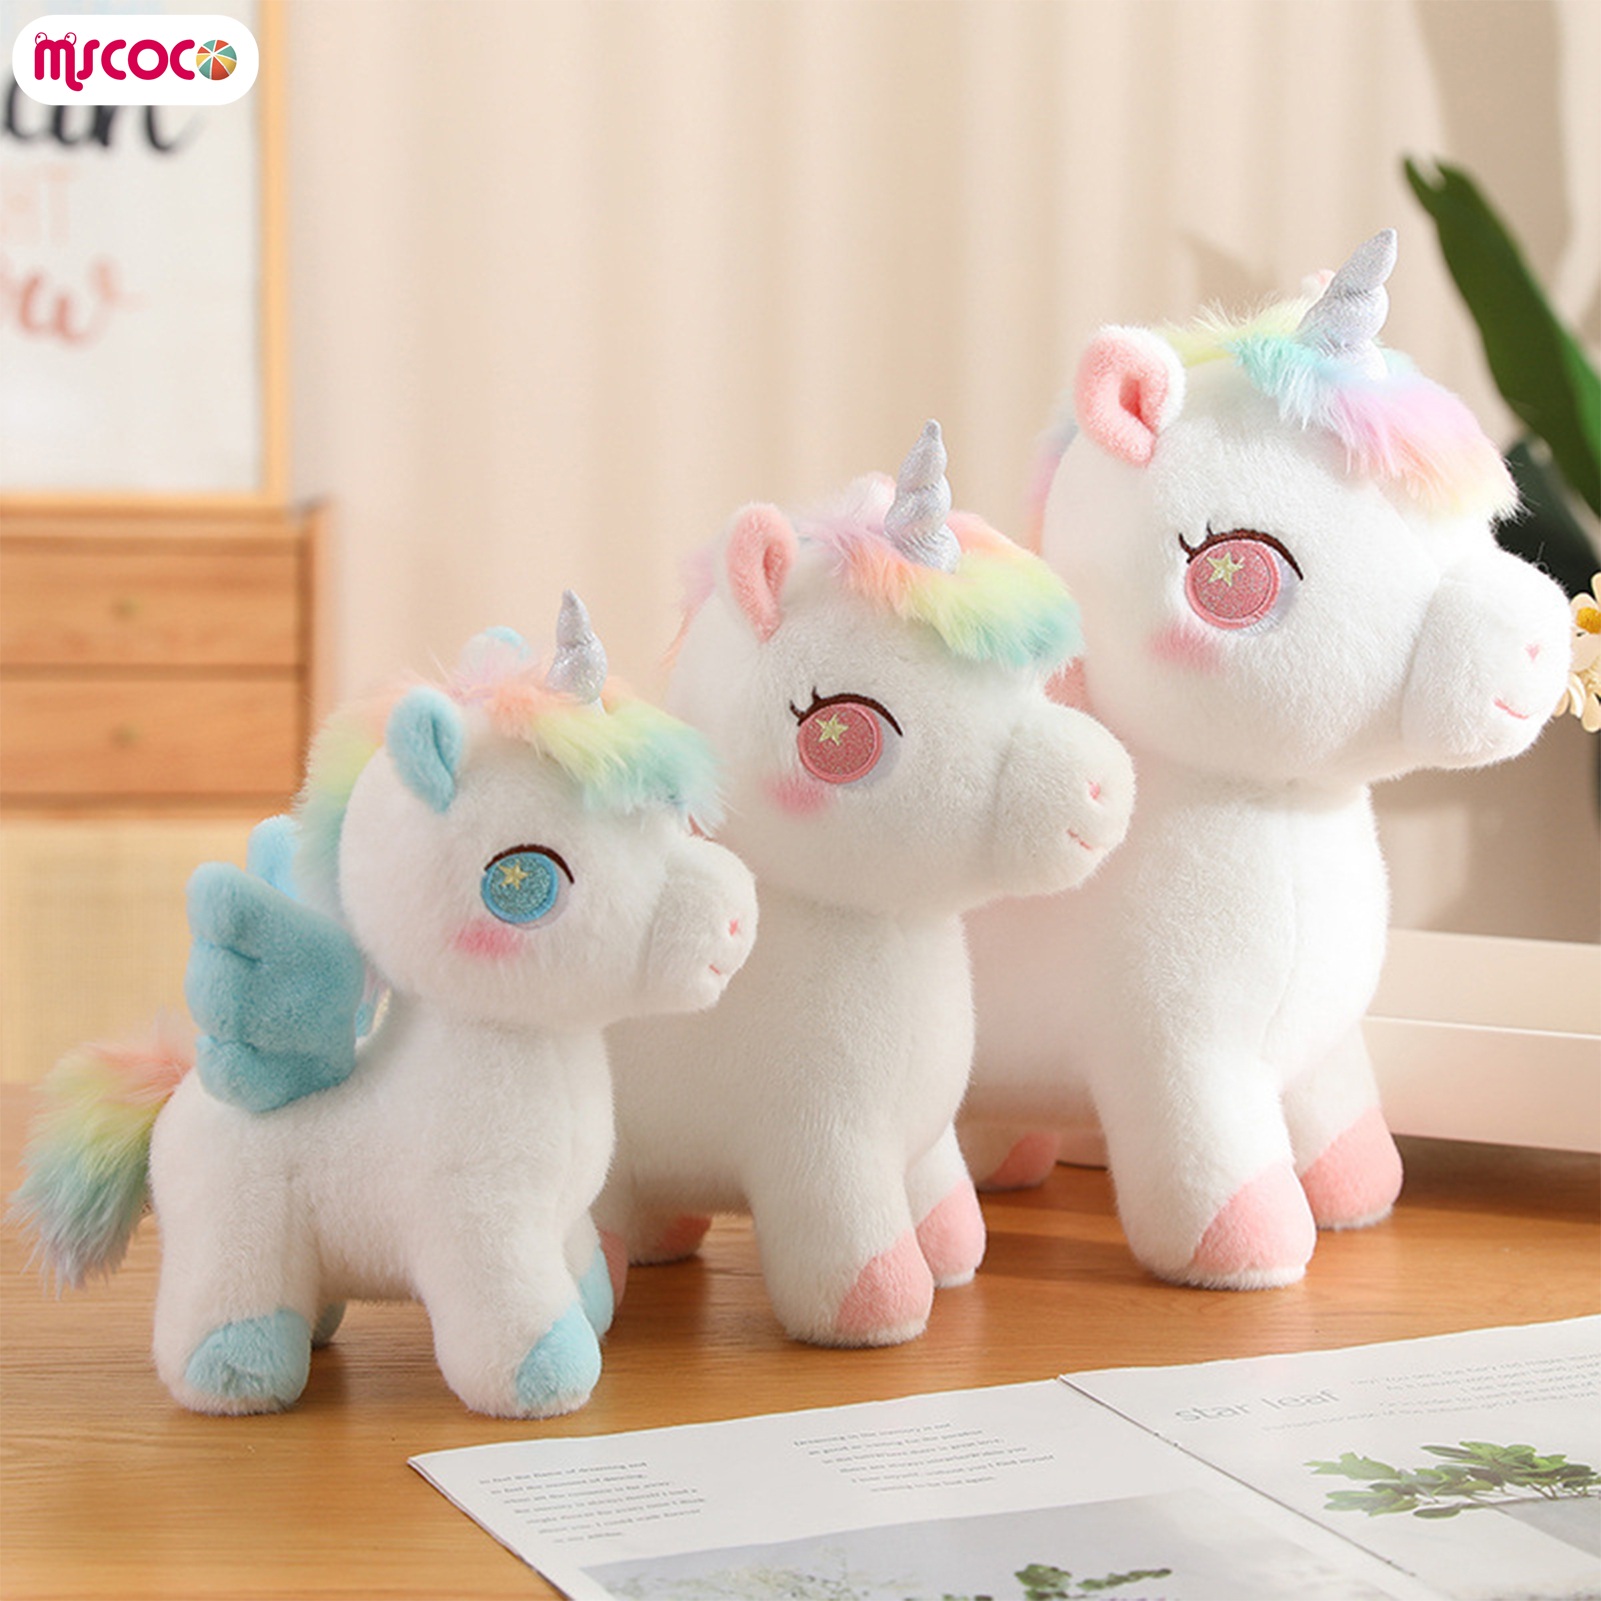 MSCOCO Unicorn Stuffed Toy Decoration Realistic Animal Stuffed Pillows